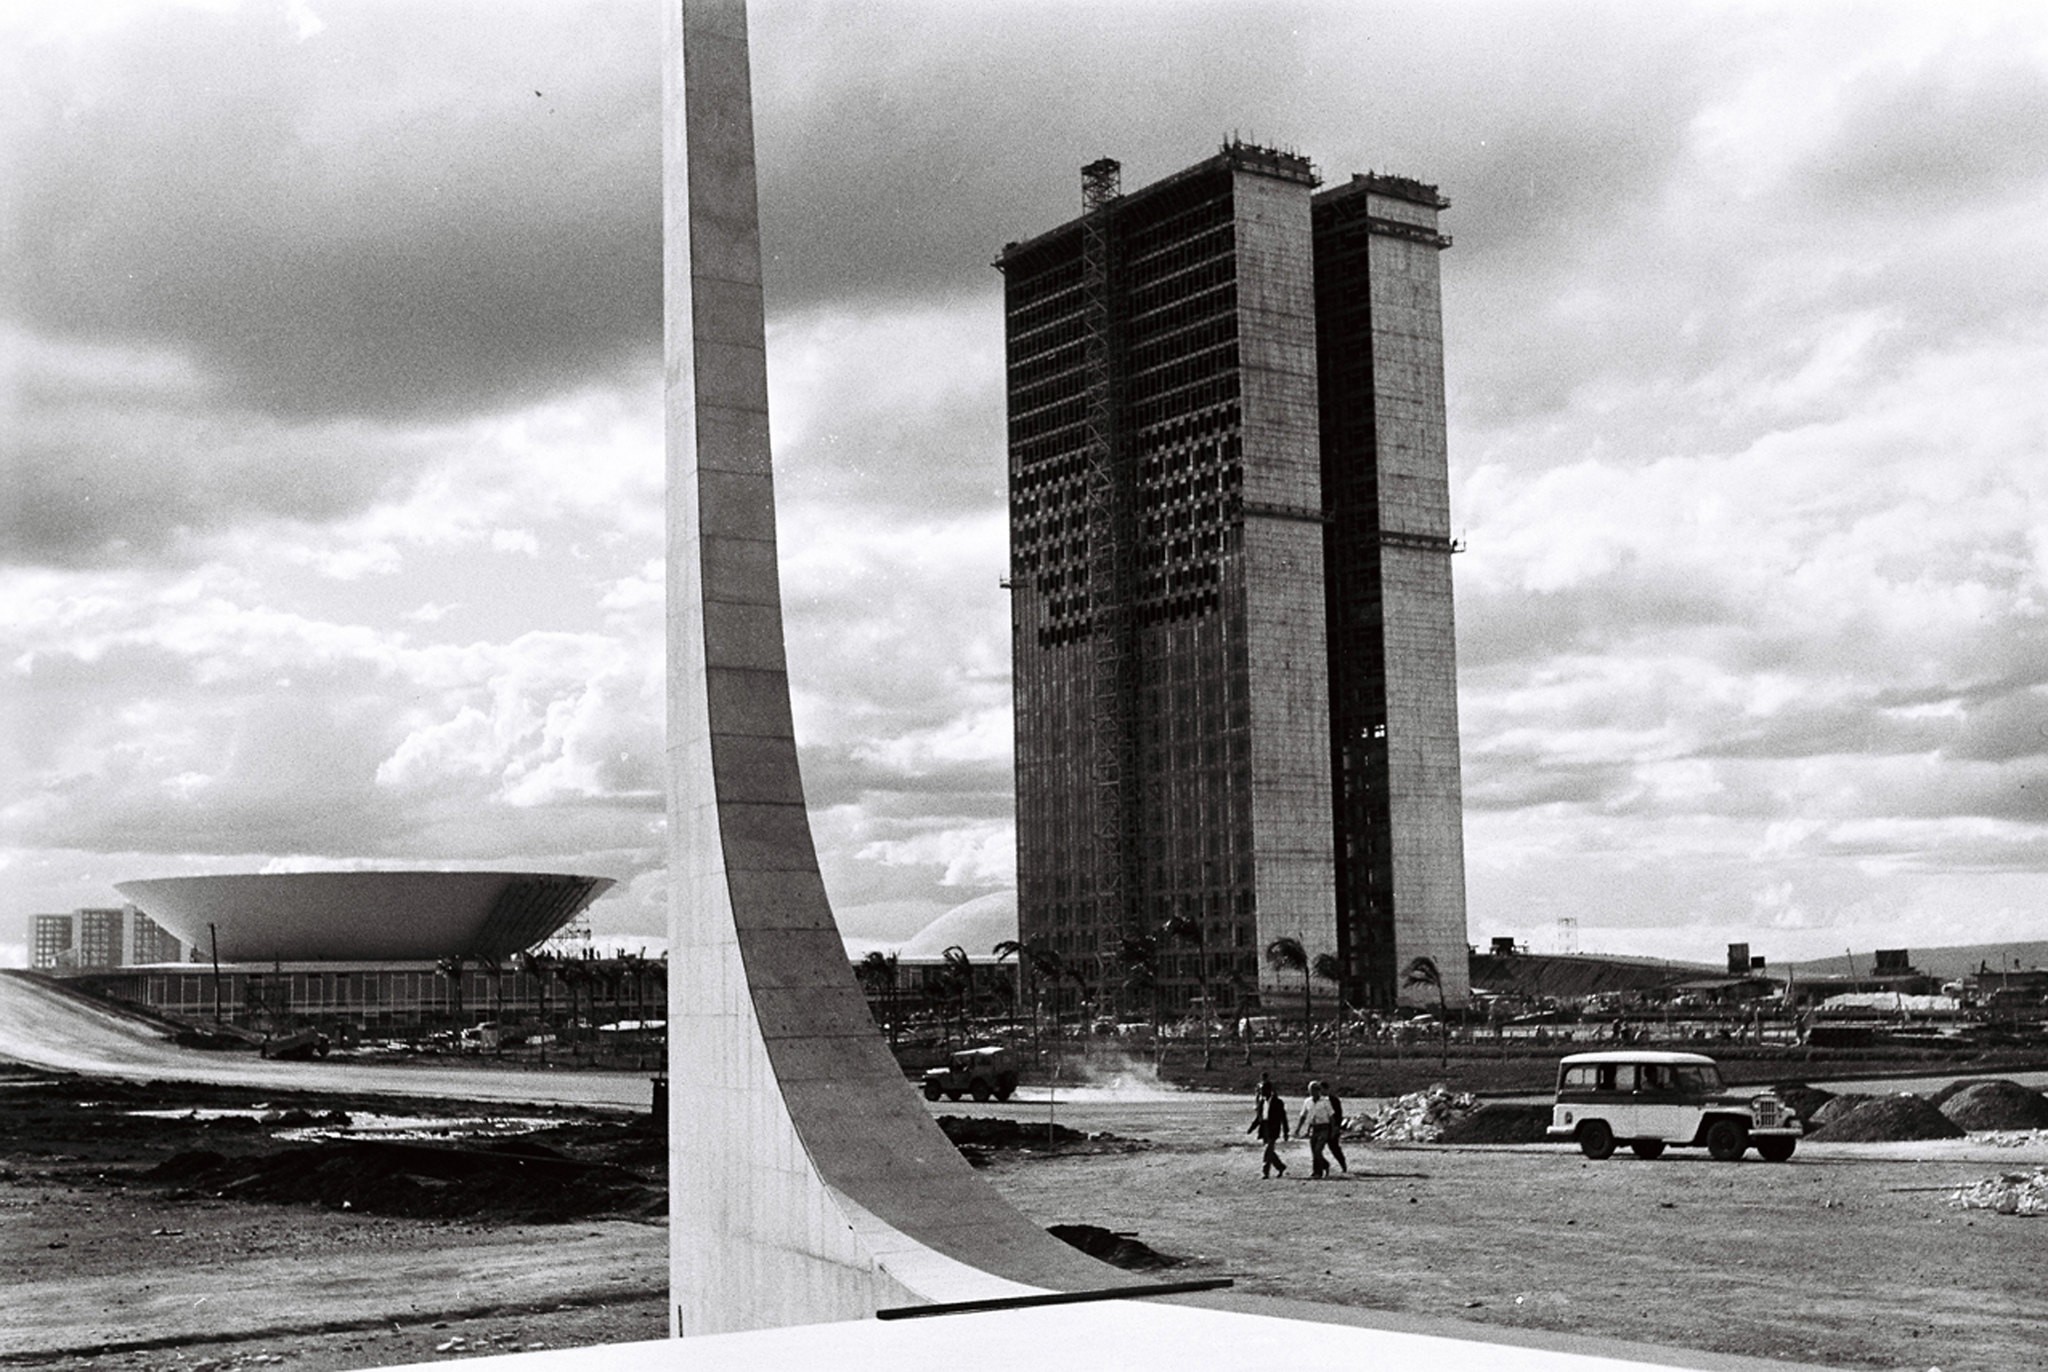 Projeto recupera fotos raras da construção de Brasília (Foto: Imagem e Memória Candanga/Arquivo Pessoal)